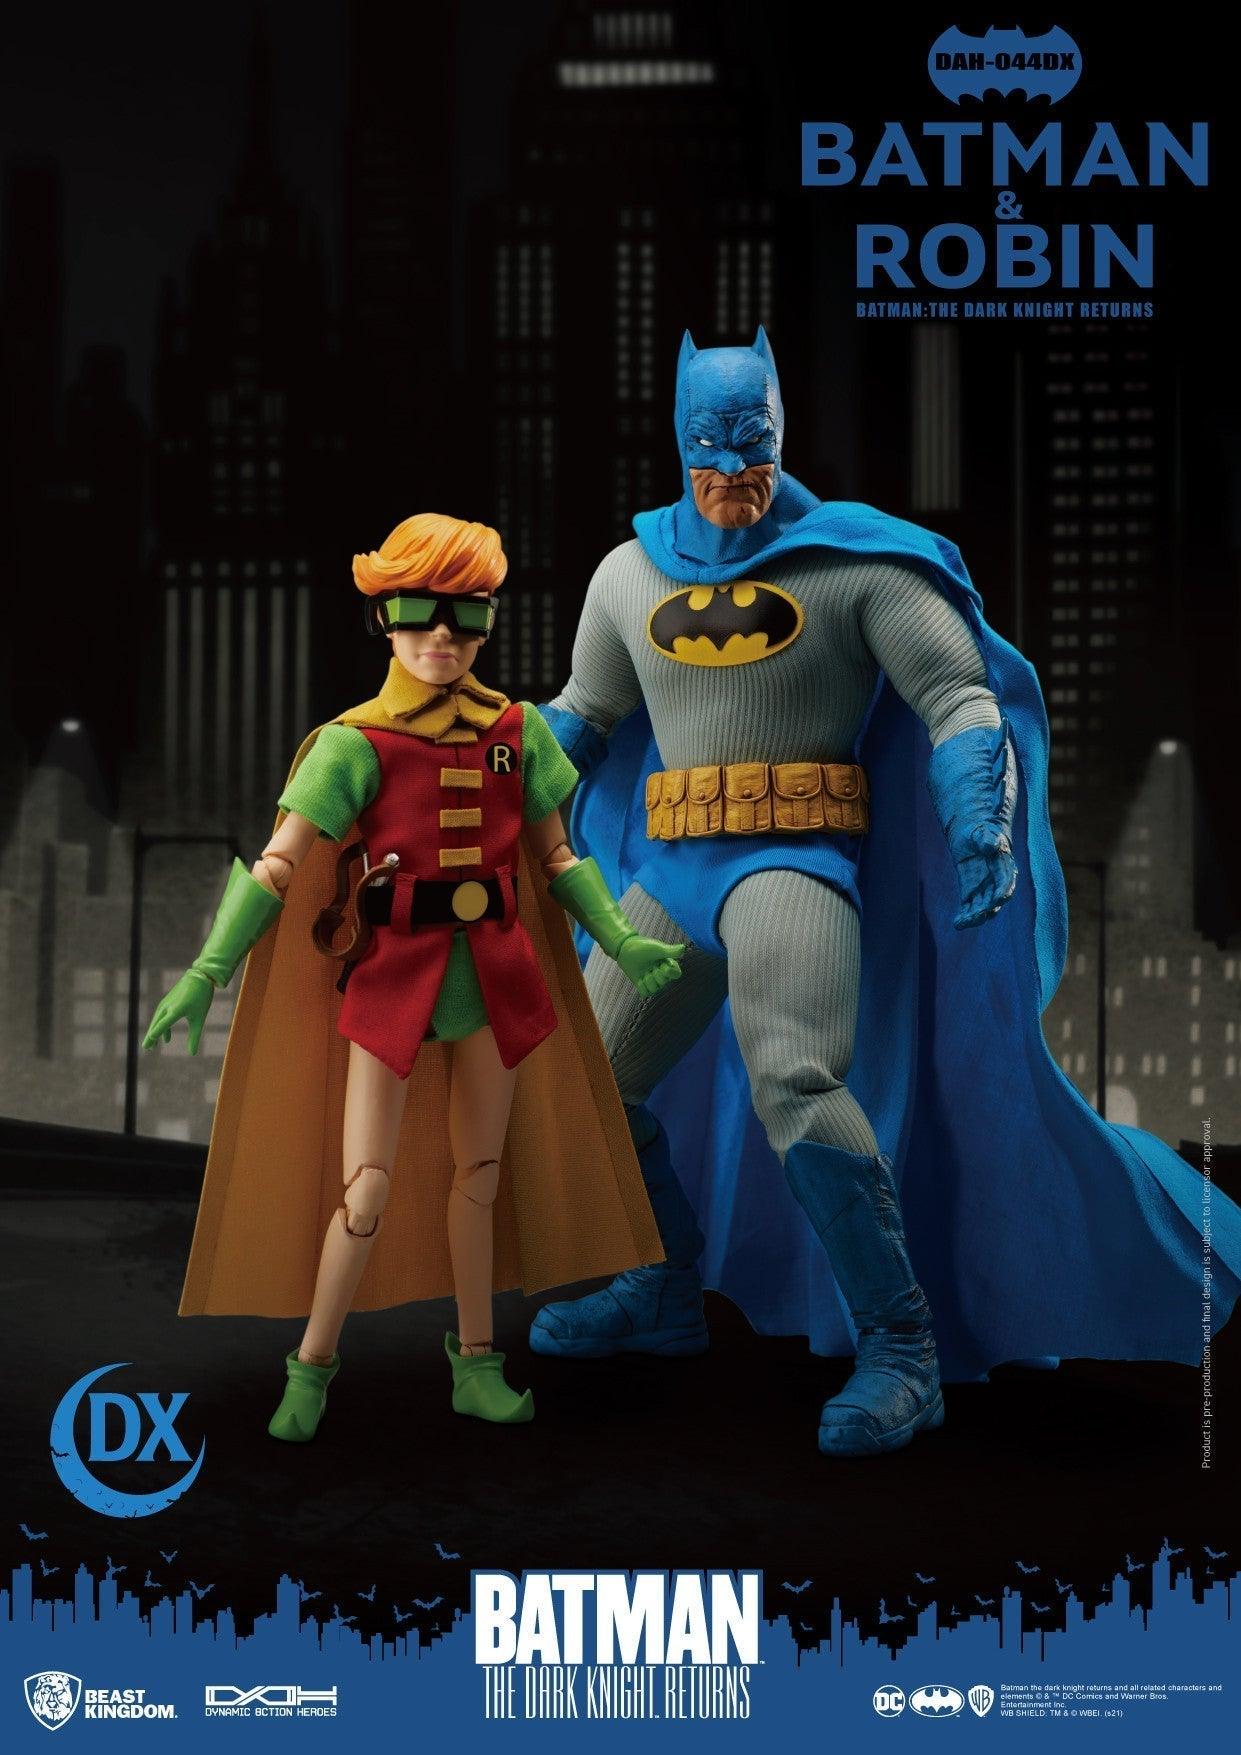 VR-95080 Beast Kingdom Dynamic Action Heroes Batman the Dark Knight Returns Batman & Robin - Beast Kingdom - Titan Pop Culture